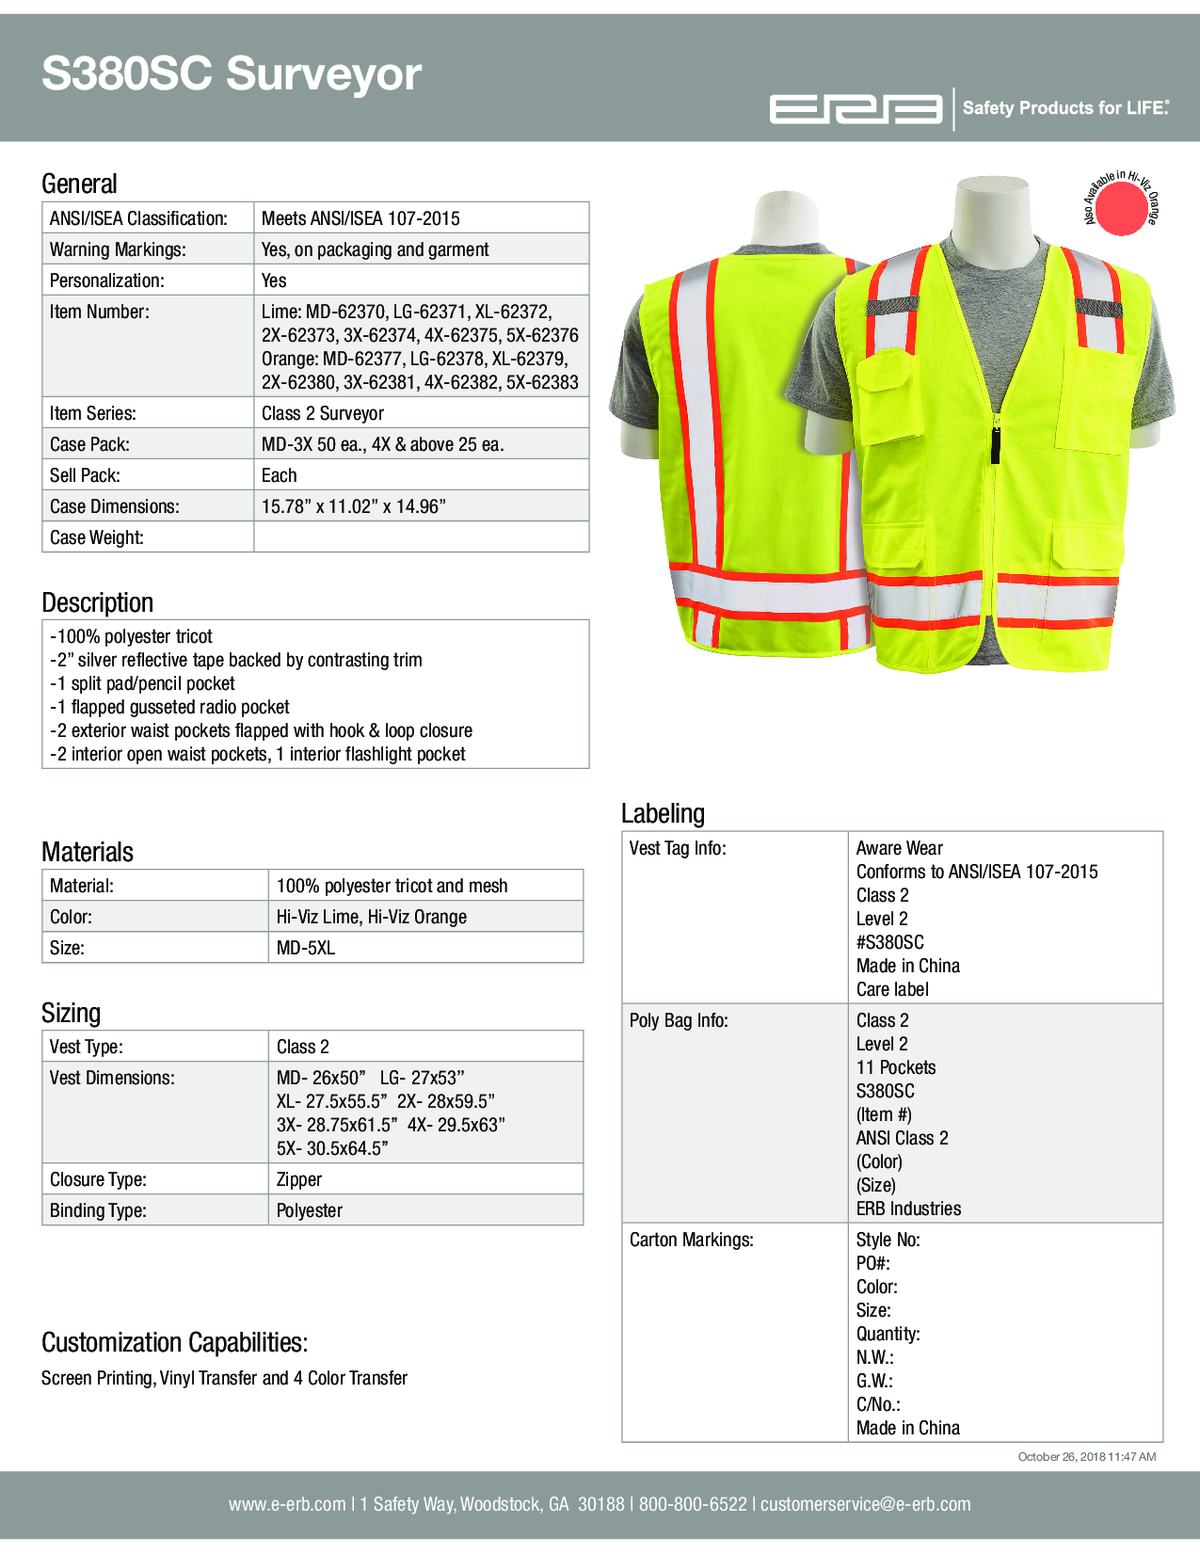 S380SC Class 2 Surveyor&#39;s Safety Vest with Pockets 1PC